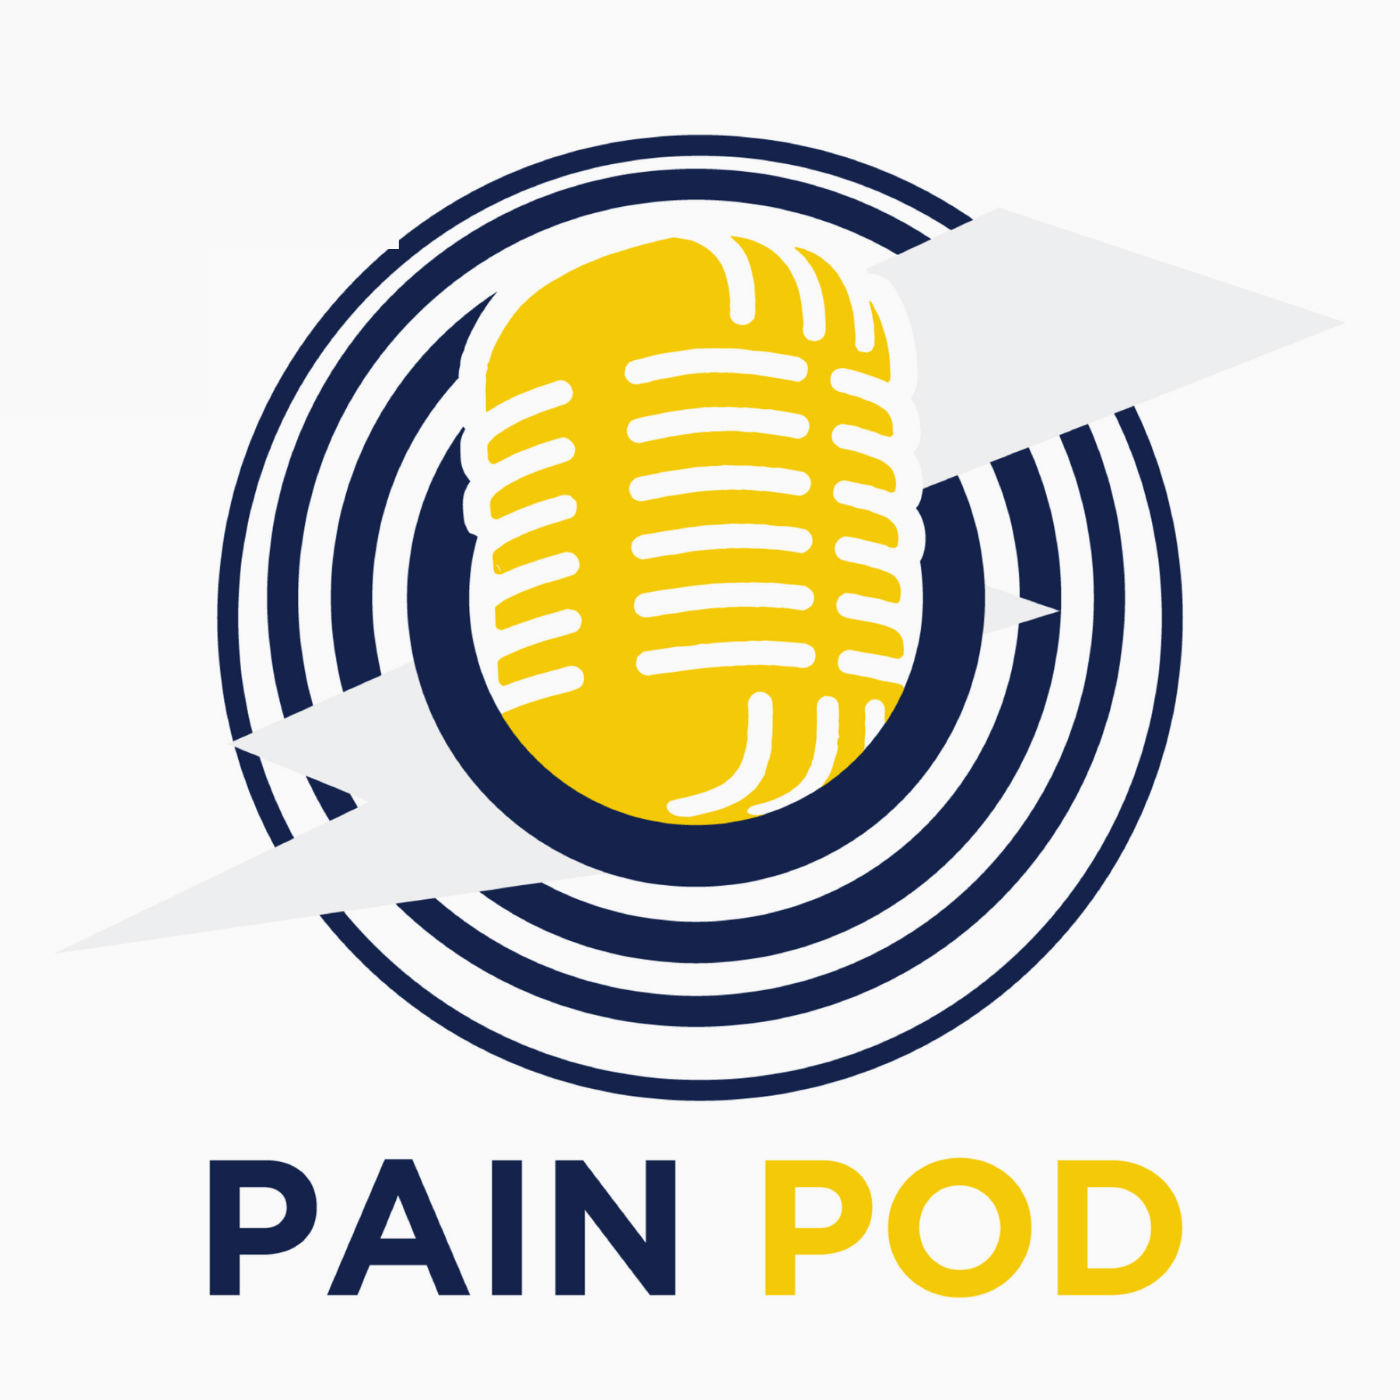 Pain Pod